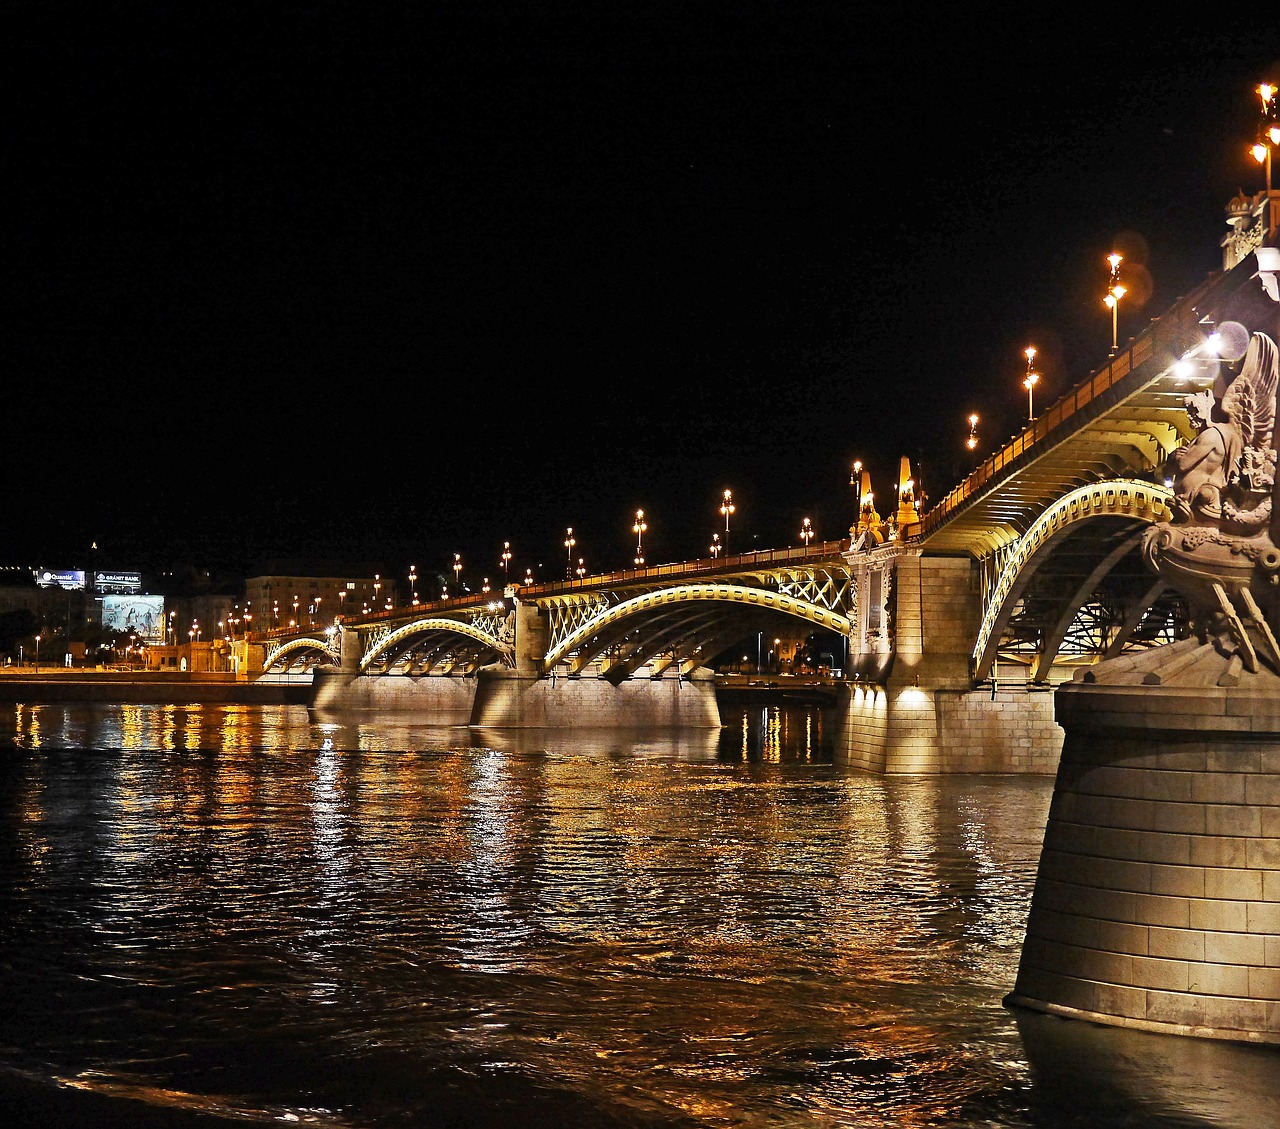 budapest at night margaret bridge illuminated free photo